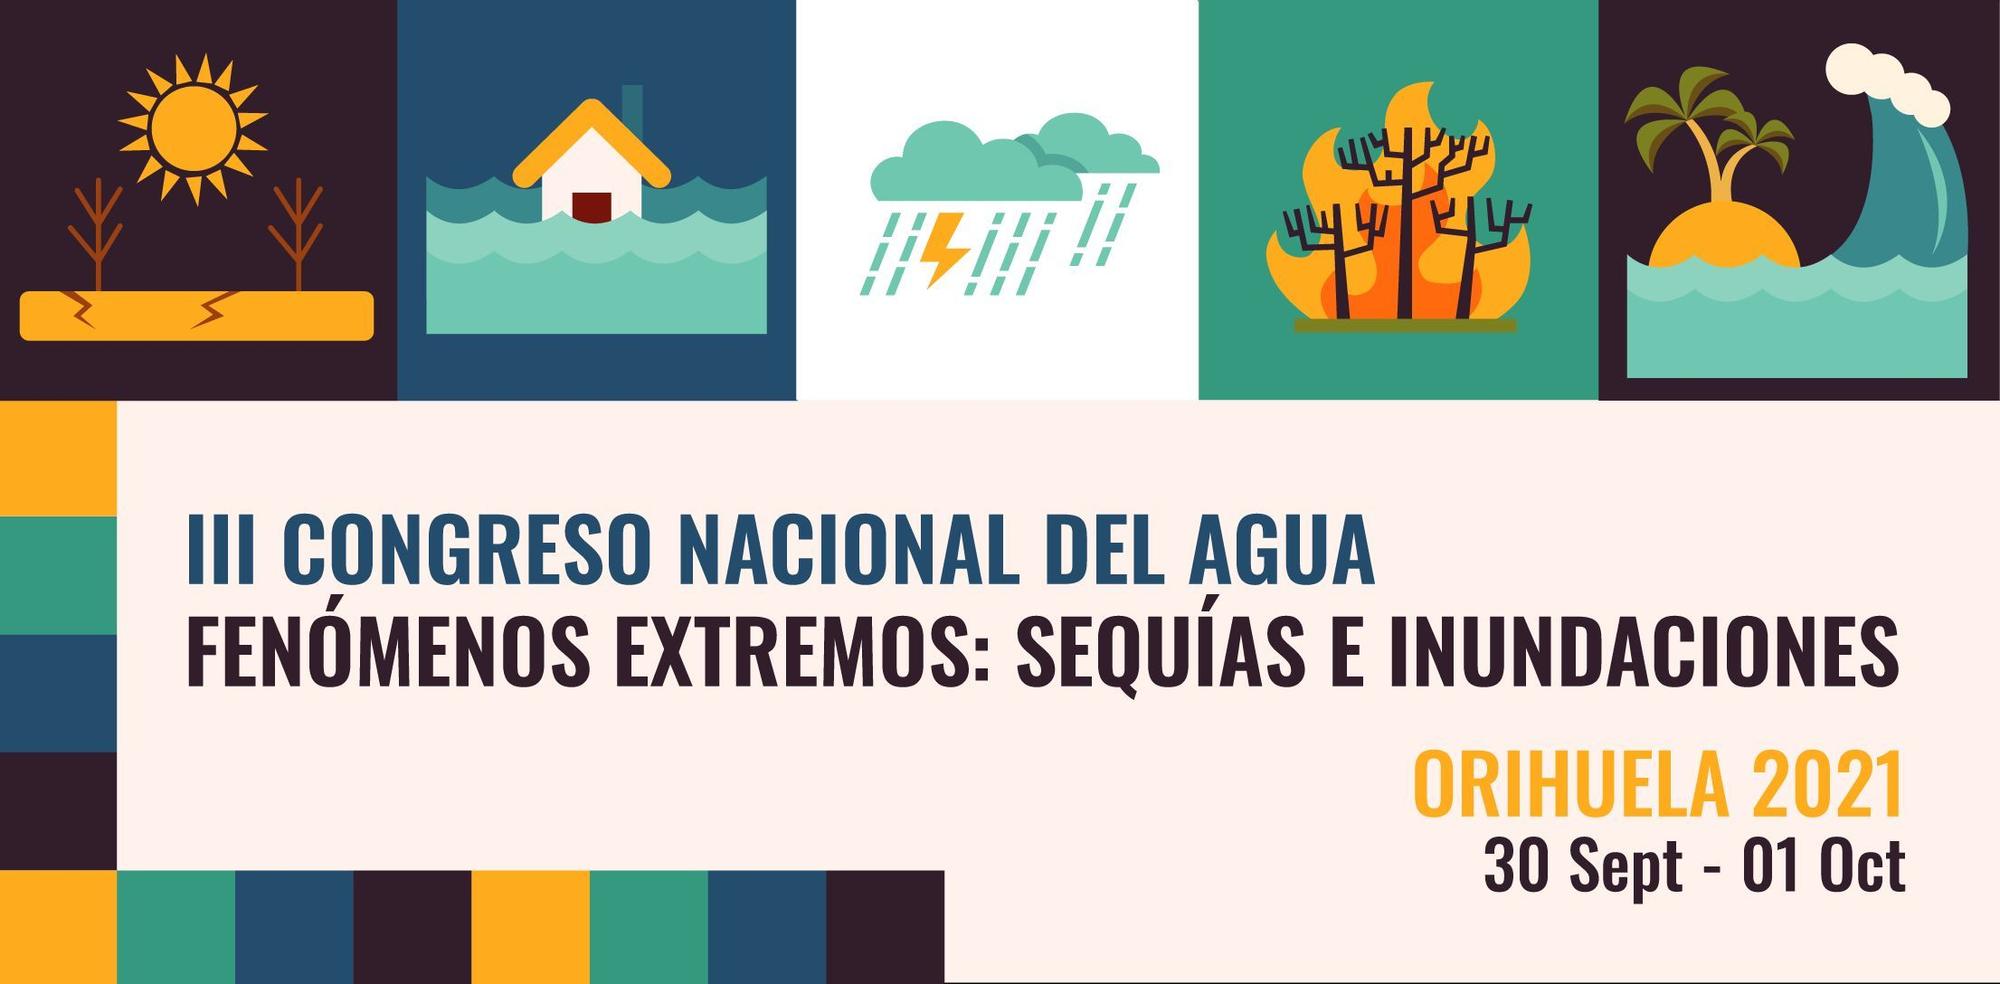 Cartel del III Congreso Nacional del Agua de Orihuela.